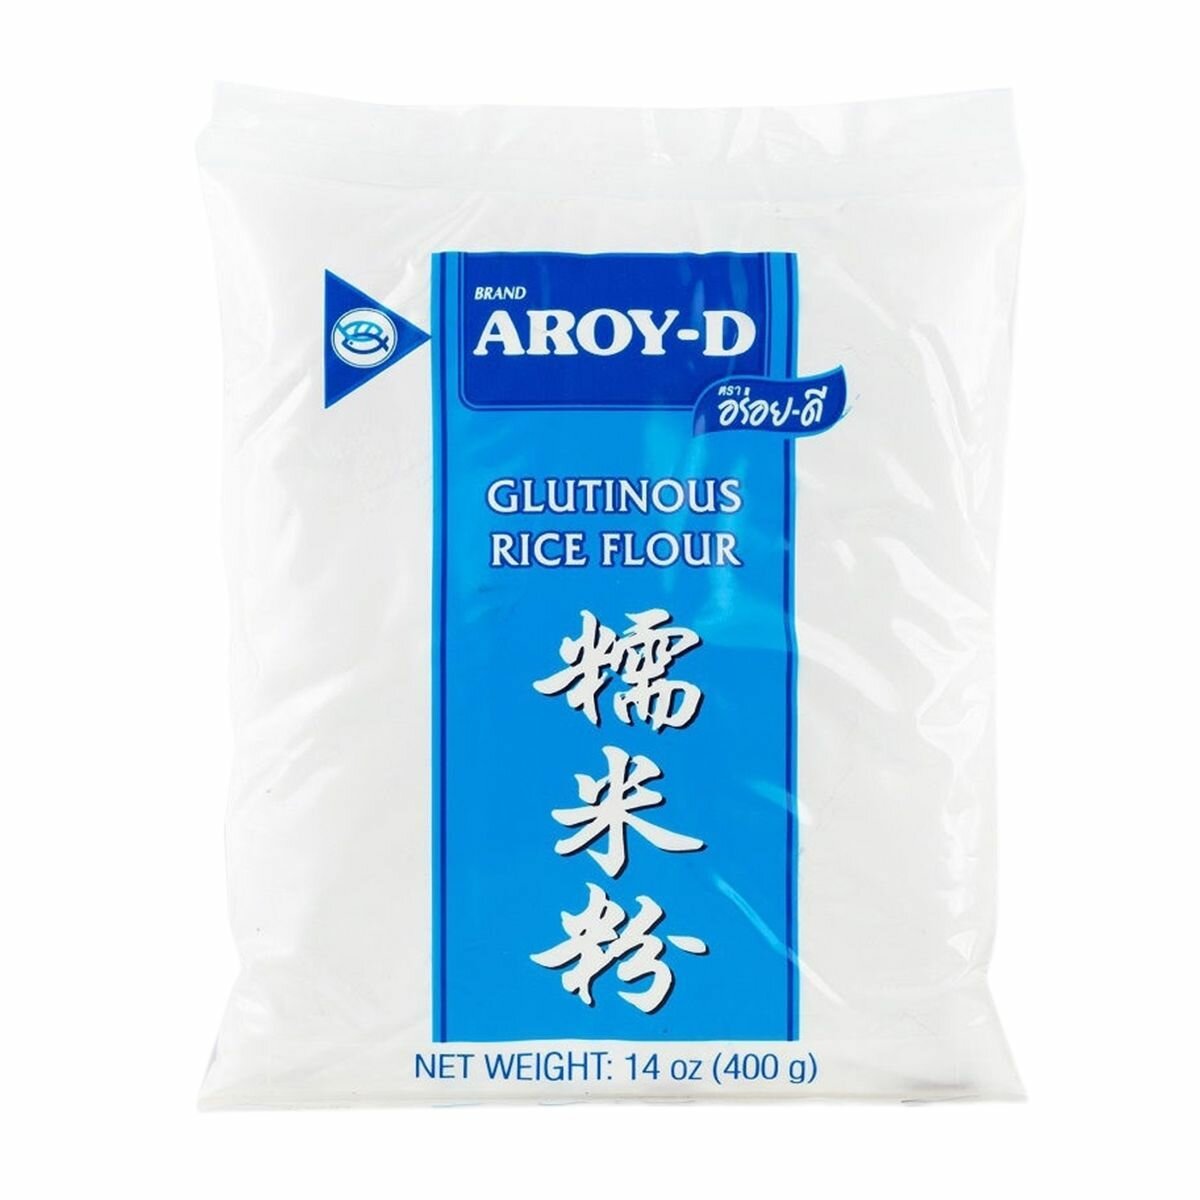 Мука рисовая клейкая, без глютена, Aroy-d, Таиланд, 400 г х 1шт